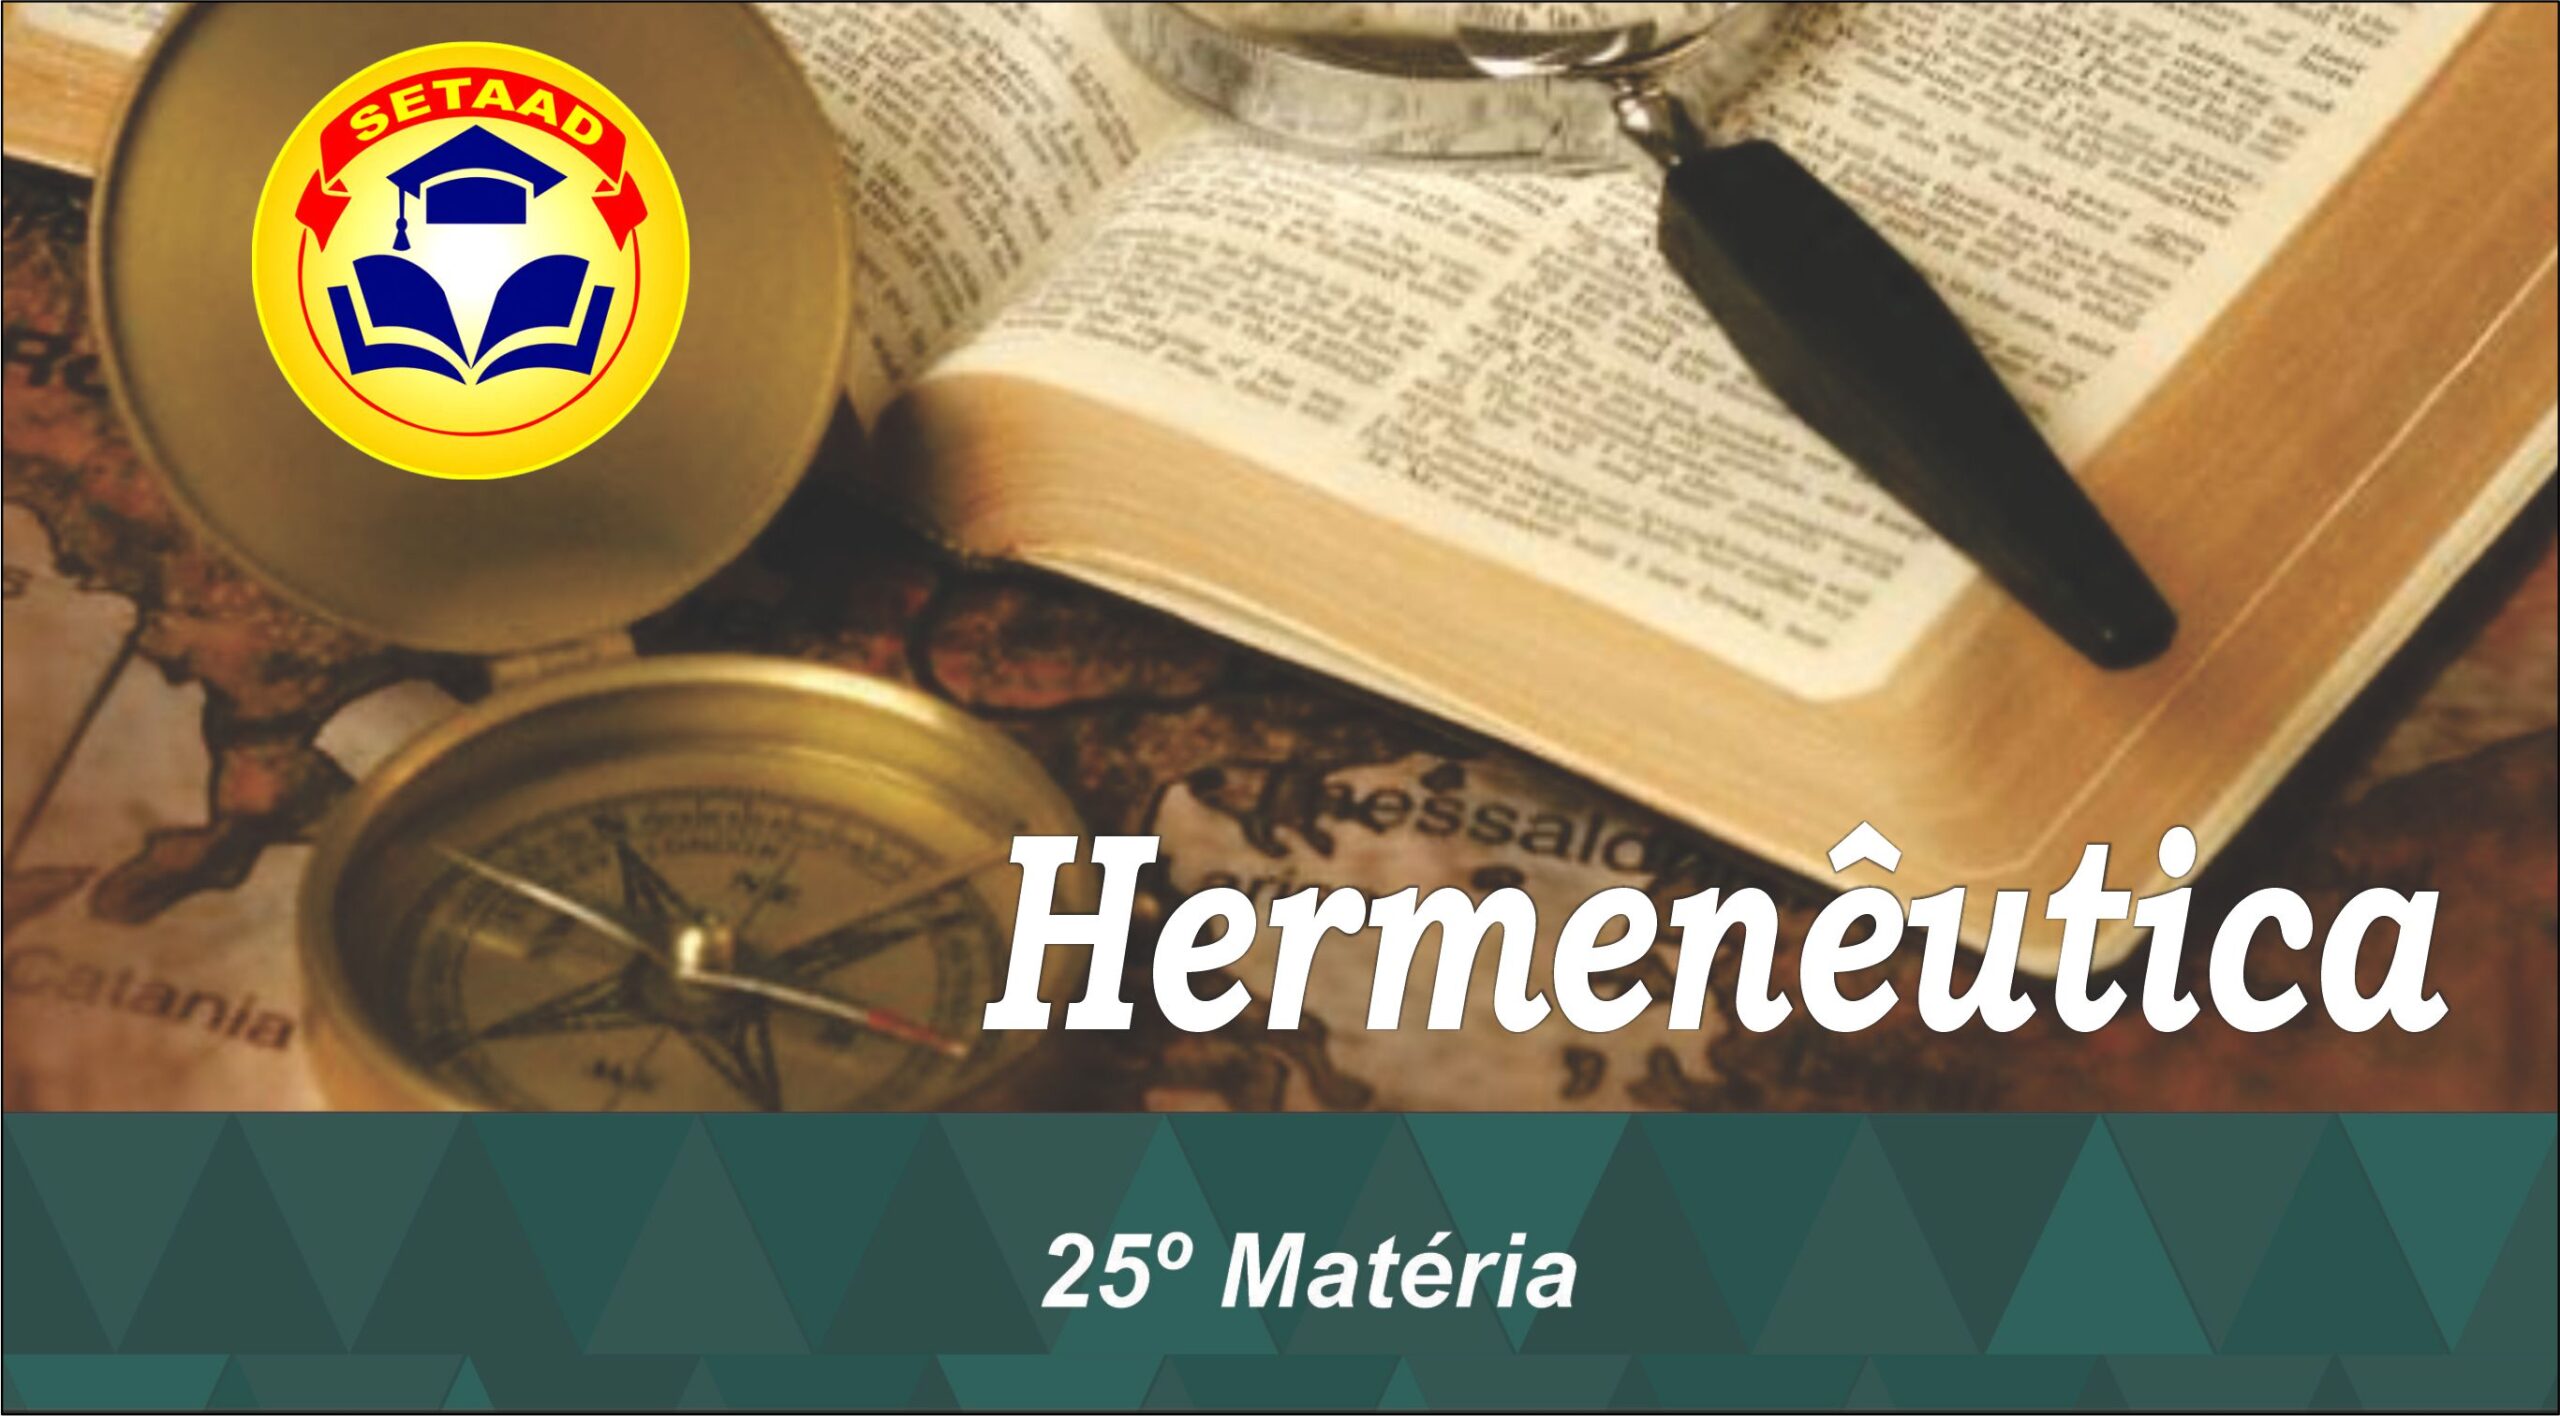 Hermenêutica Bíblica (25 Matéria do Curso Médio em Teologia Setaad)